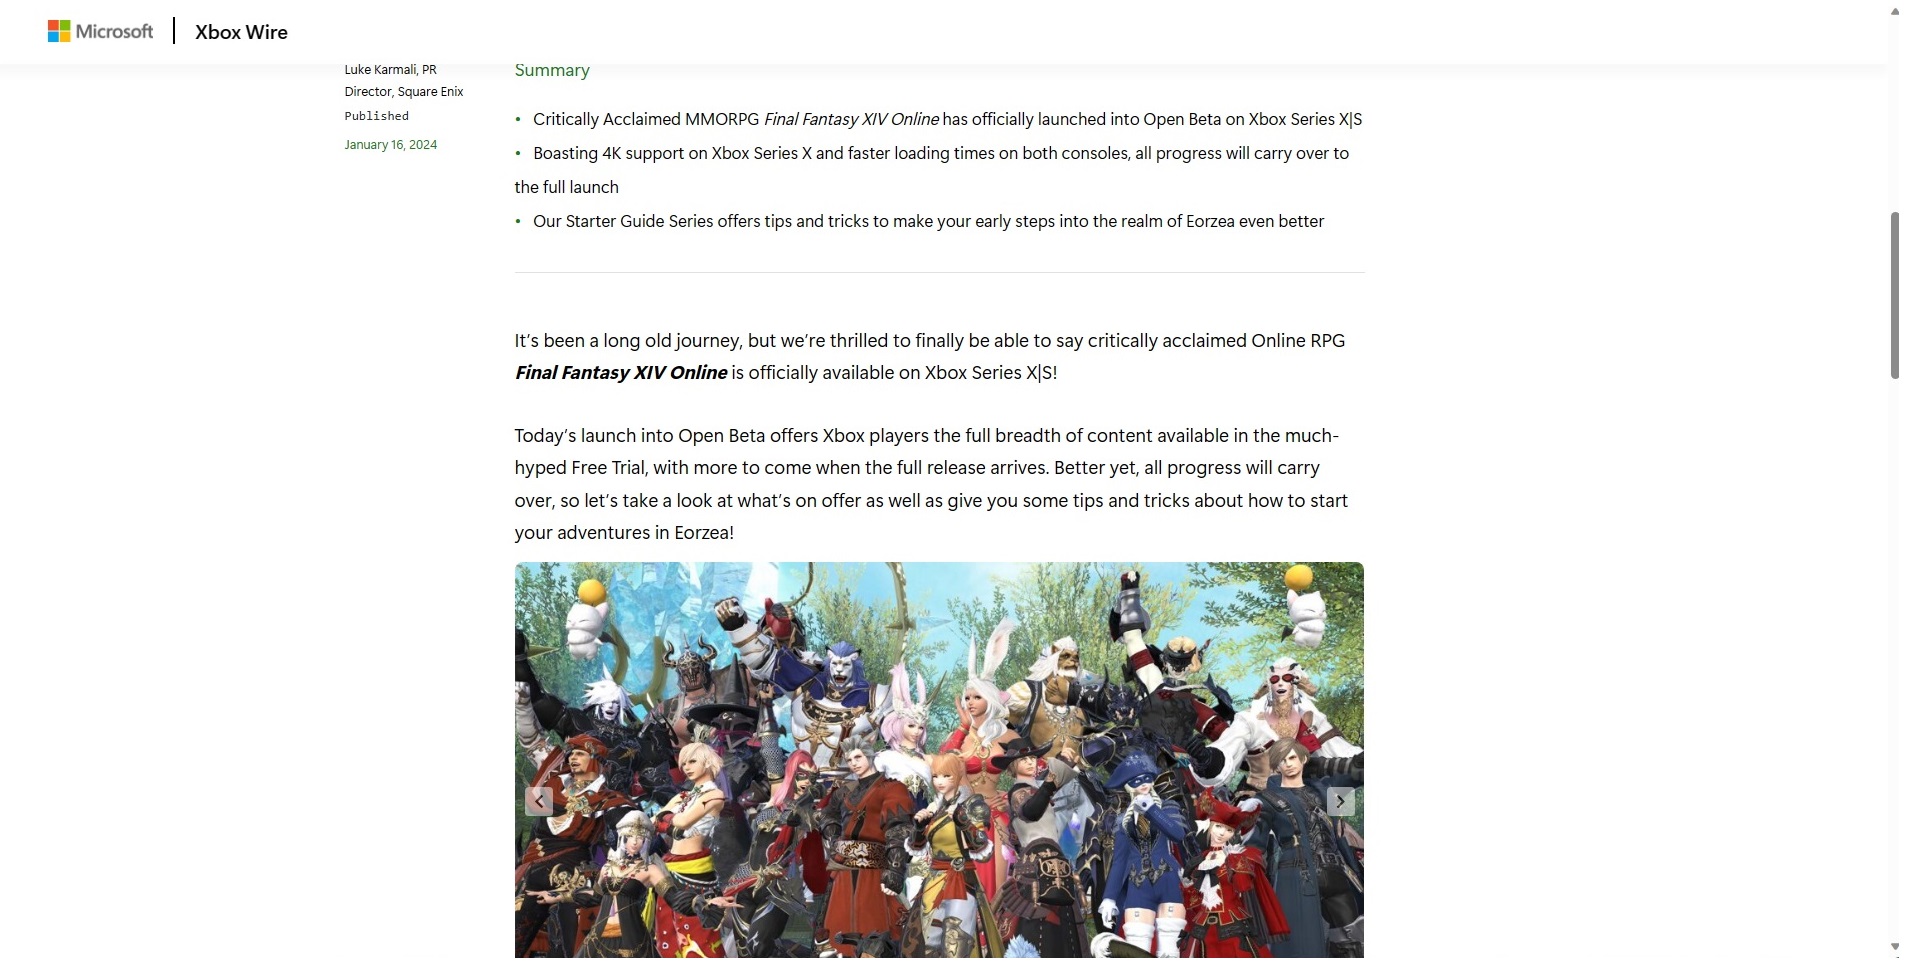 Xbox Wire'ın Final Fantasy XIV Xbox Açık Beta'daki haber gönderisi artık silindi